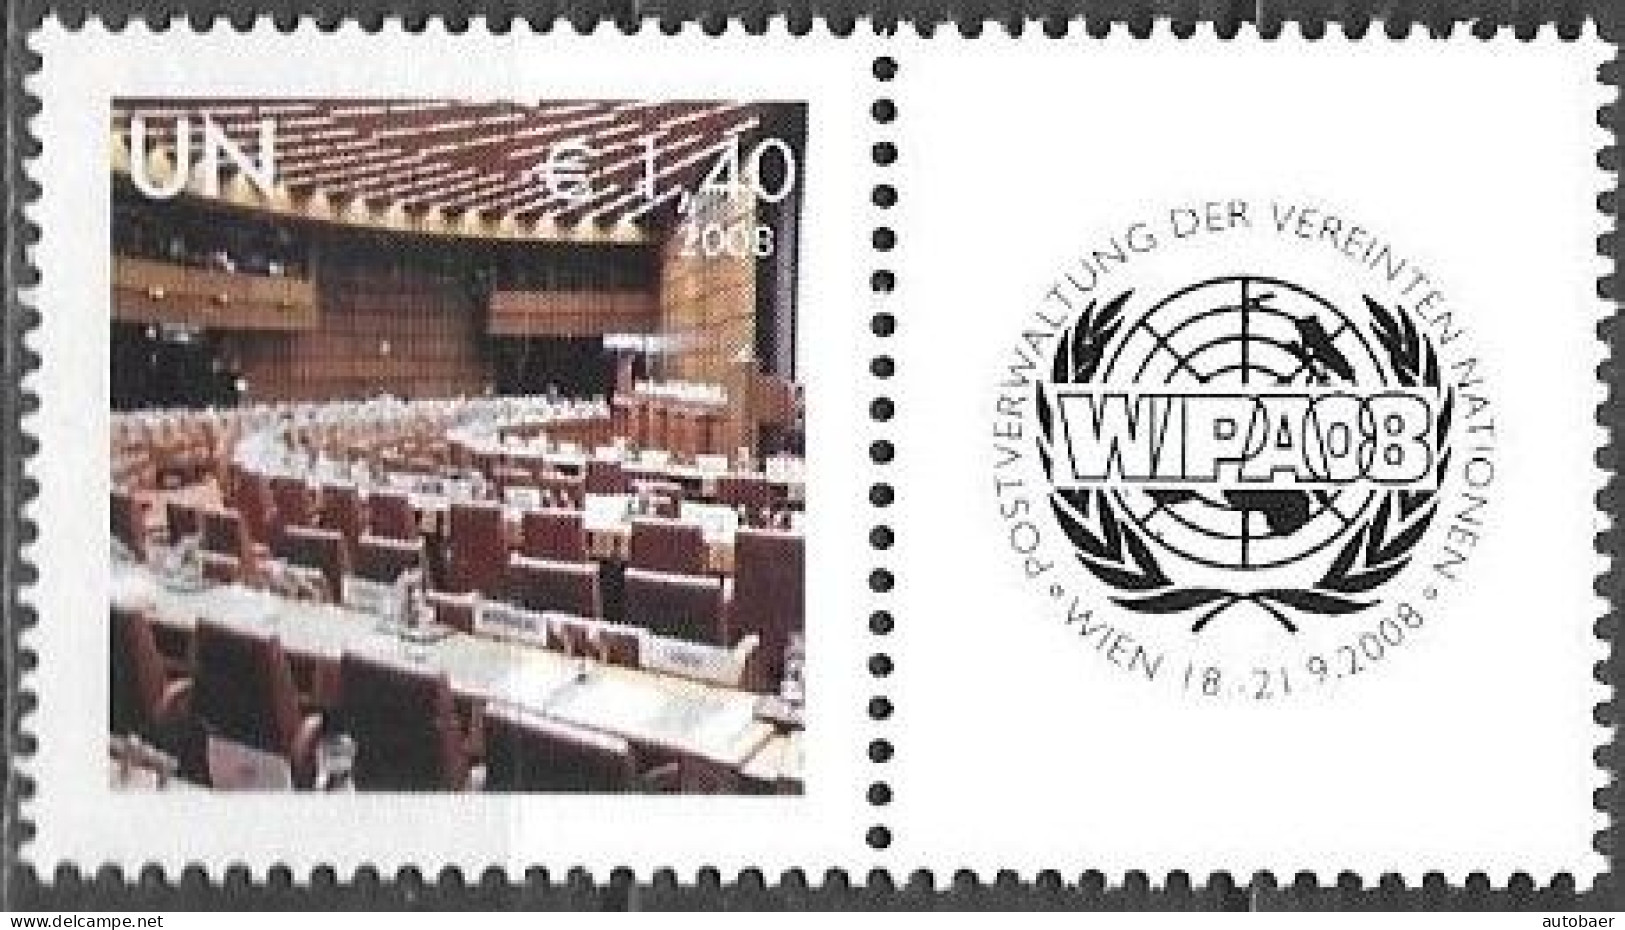 United Nations UNO UN Vereinte Nationen Vienna Wien 2008 Stamp Exhibition WIPA Briefmarken Ausstellung Mi. 554 MNH ** - Nuevos